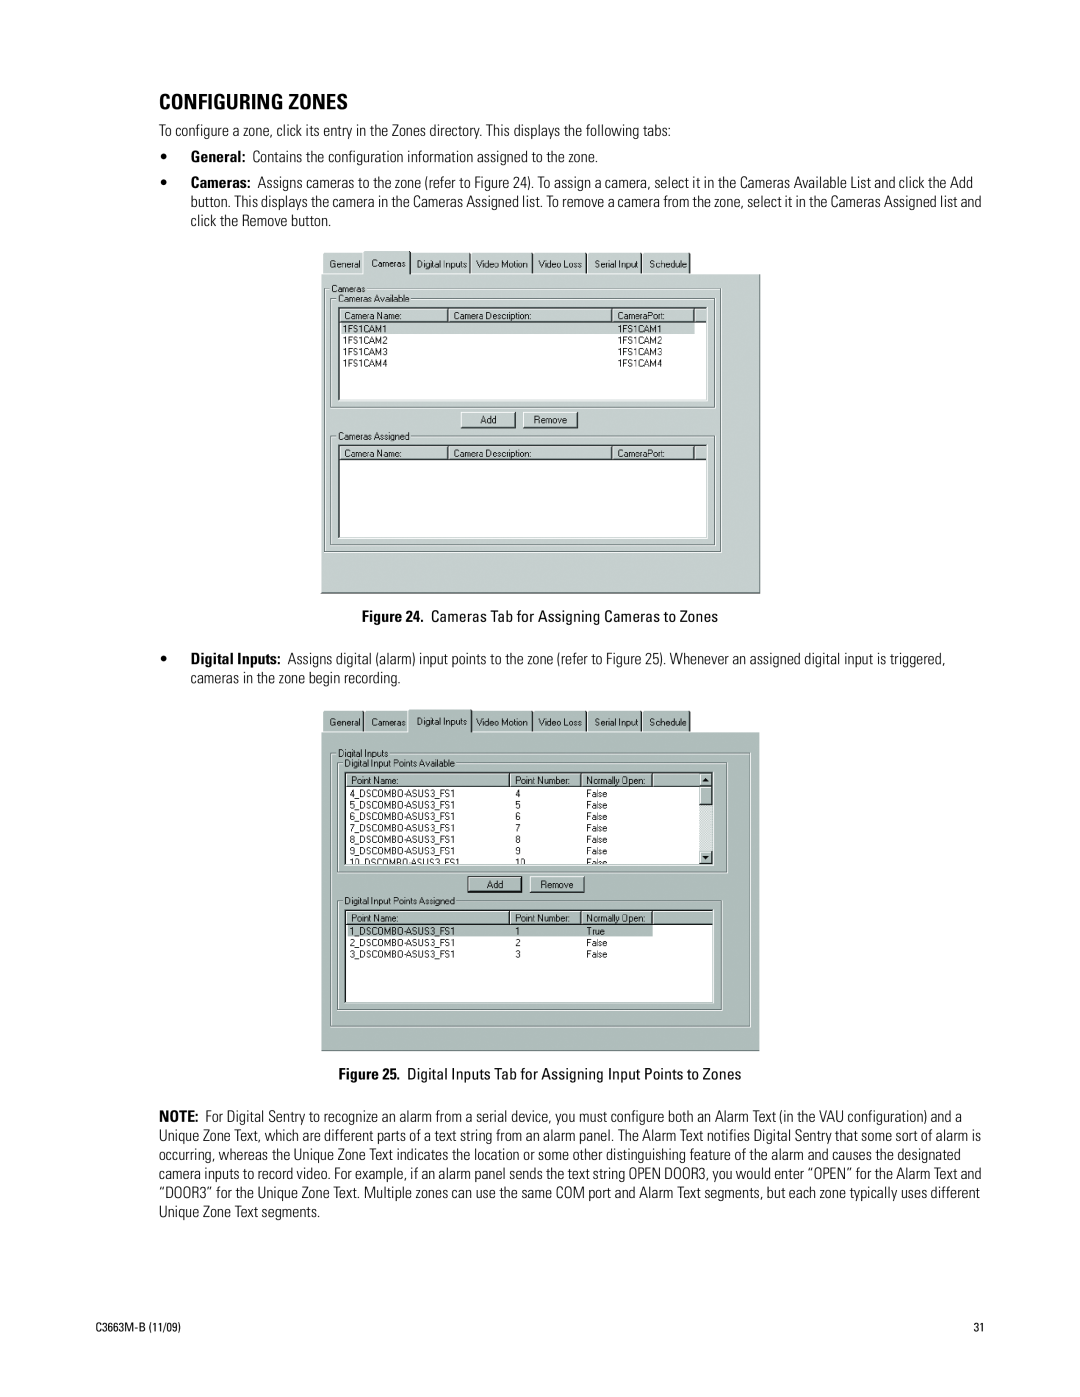 Pelco DS NVS manual Configuring Zones, C3663M-B11/09 